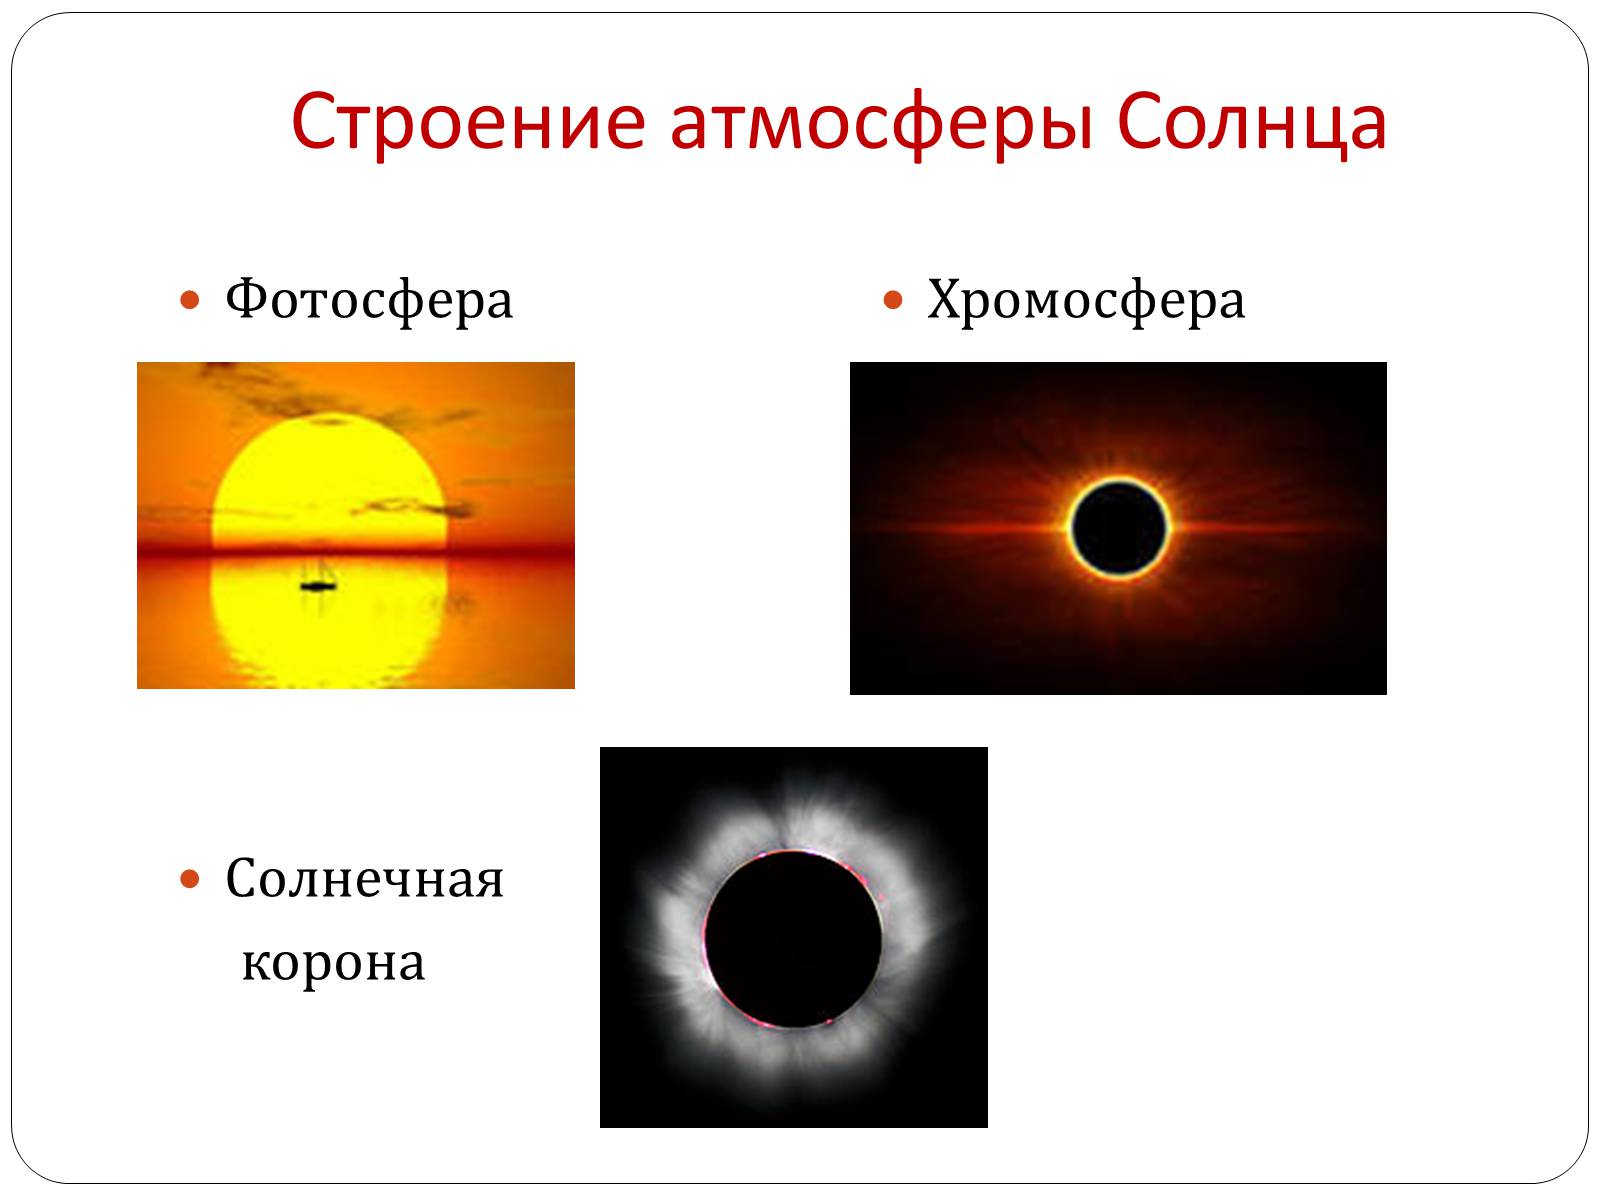 Элементы составляющие атмосферы солнца. Строение атмосферы солнца Фотосфера. Строение солнца Фотосфера хромосфера Солнечная корона. Строение солнечной атмосферы: фотосфере, хромосфера, корона.. Строение солнечной атмосферы.